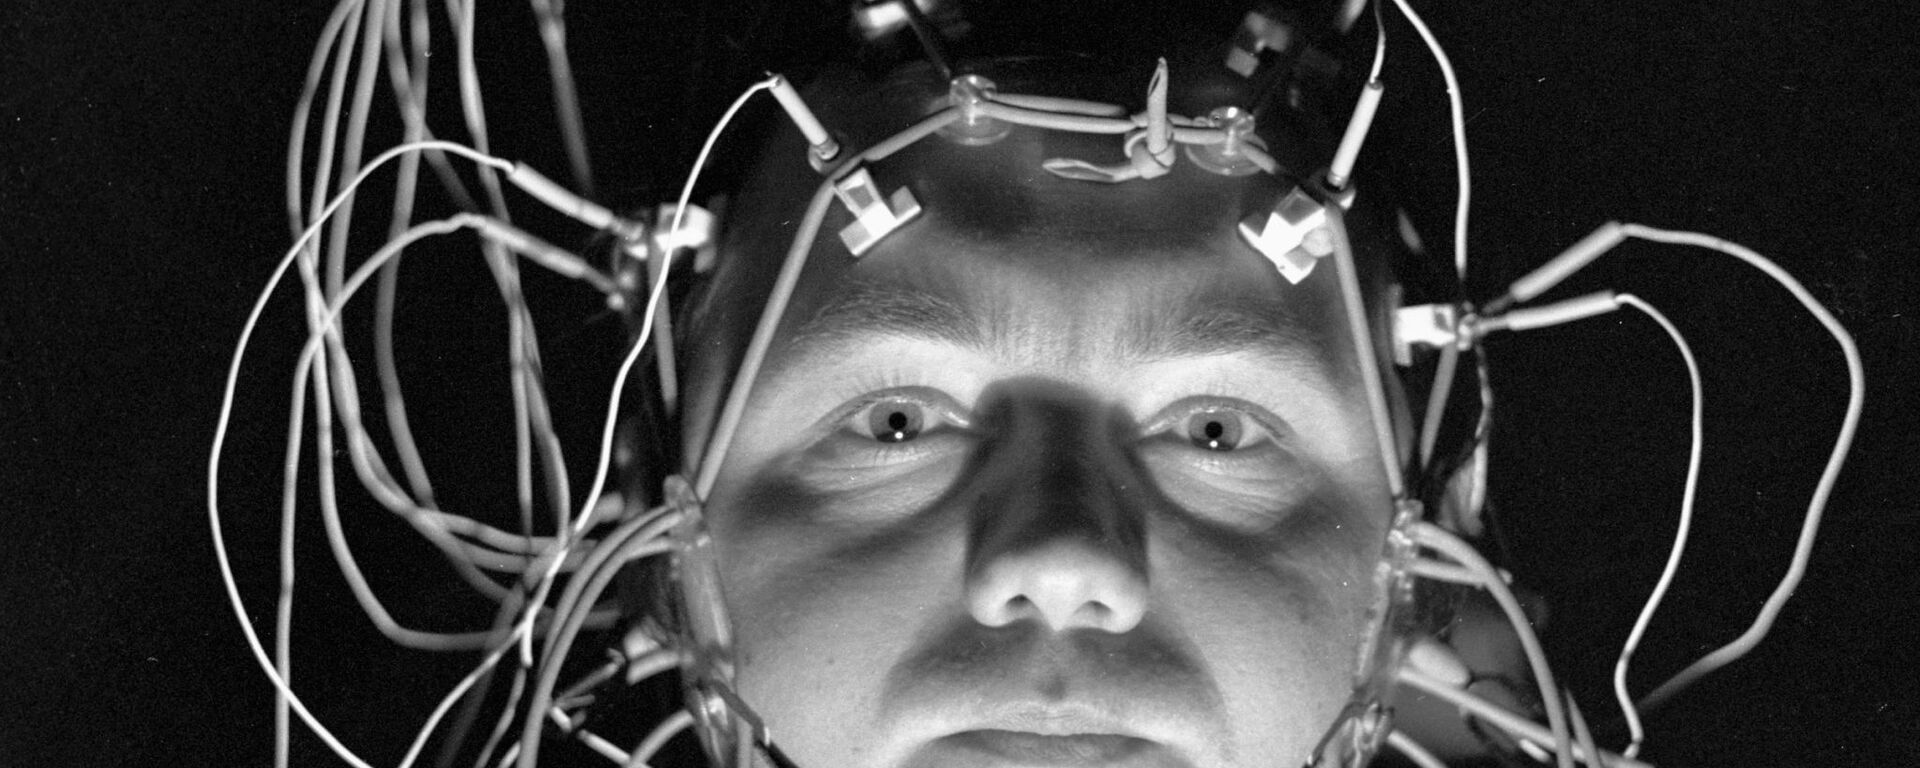 Մարդու ուղեղը - Sputnik Արմենիա, 1920, 17.10.2021